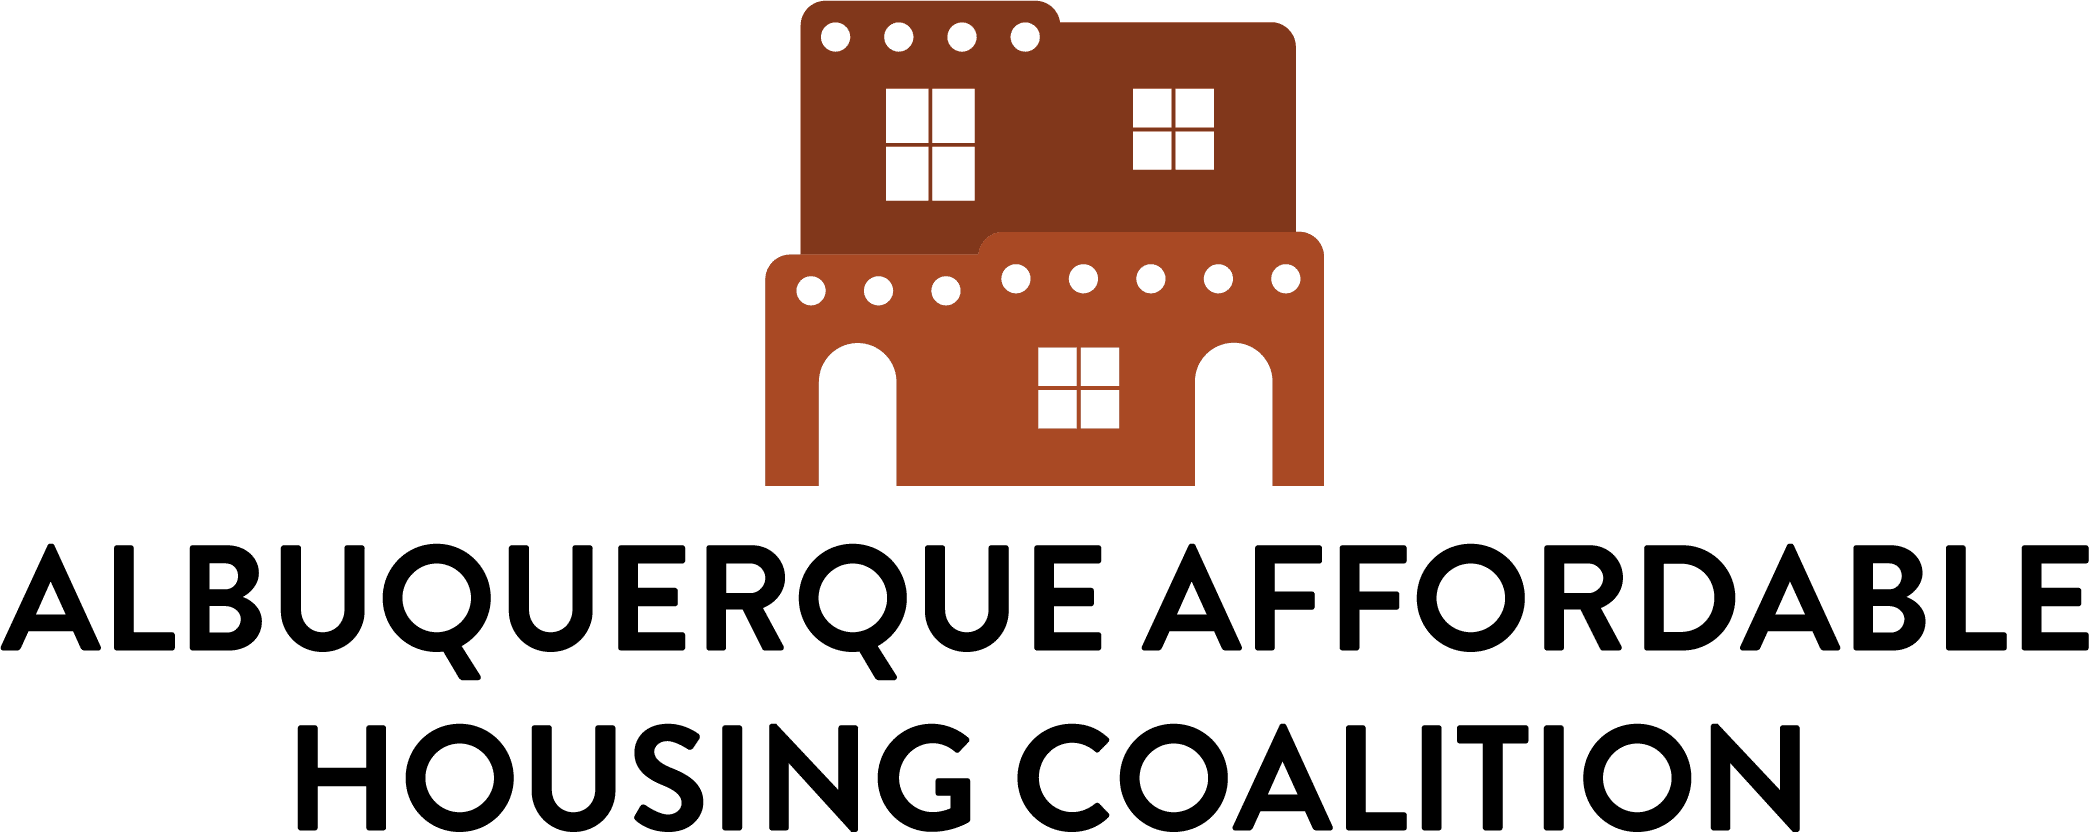 Albuquerque Affordable Housing Coalition logo